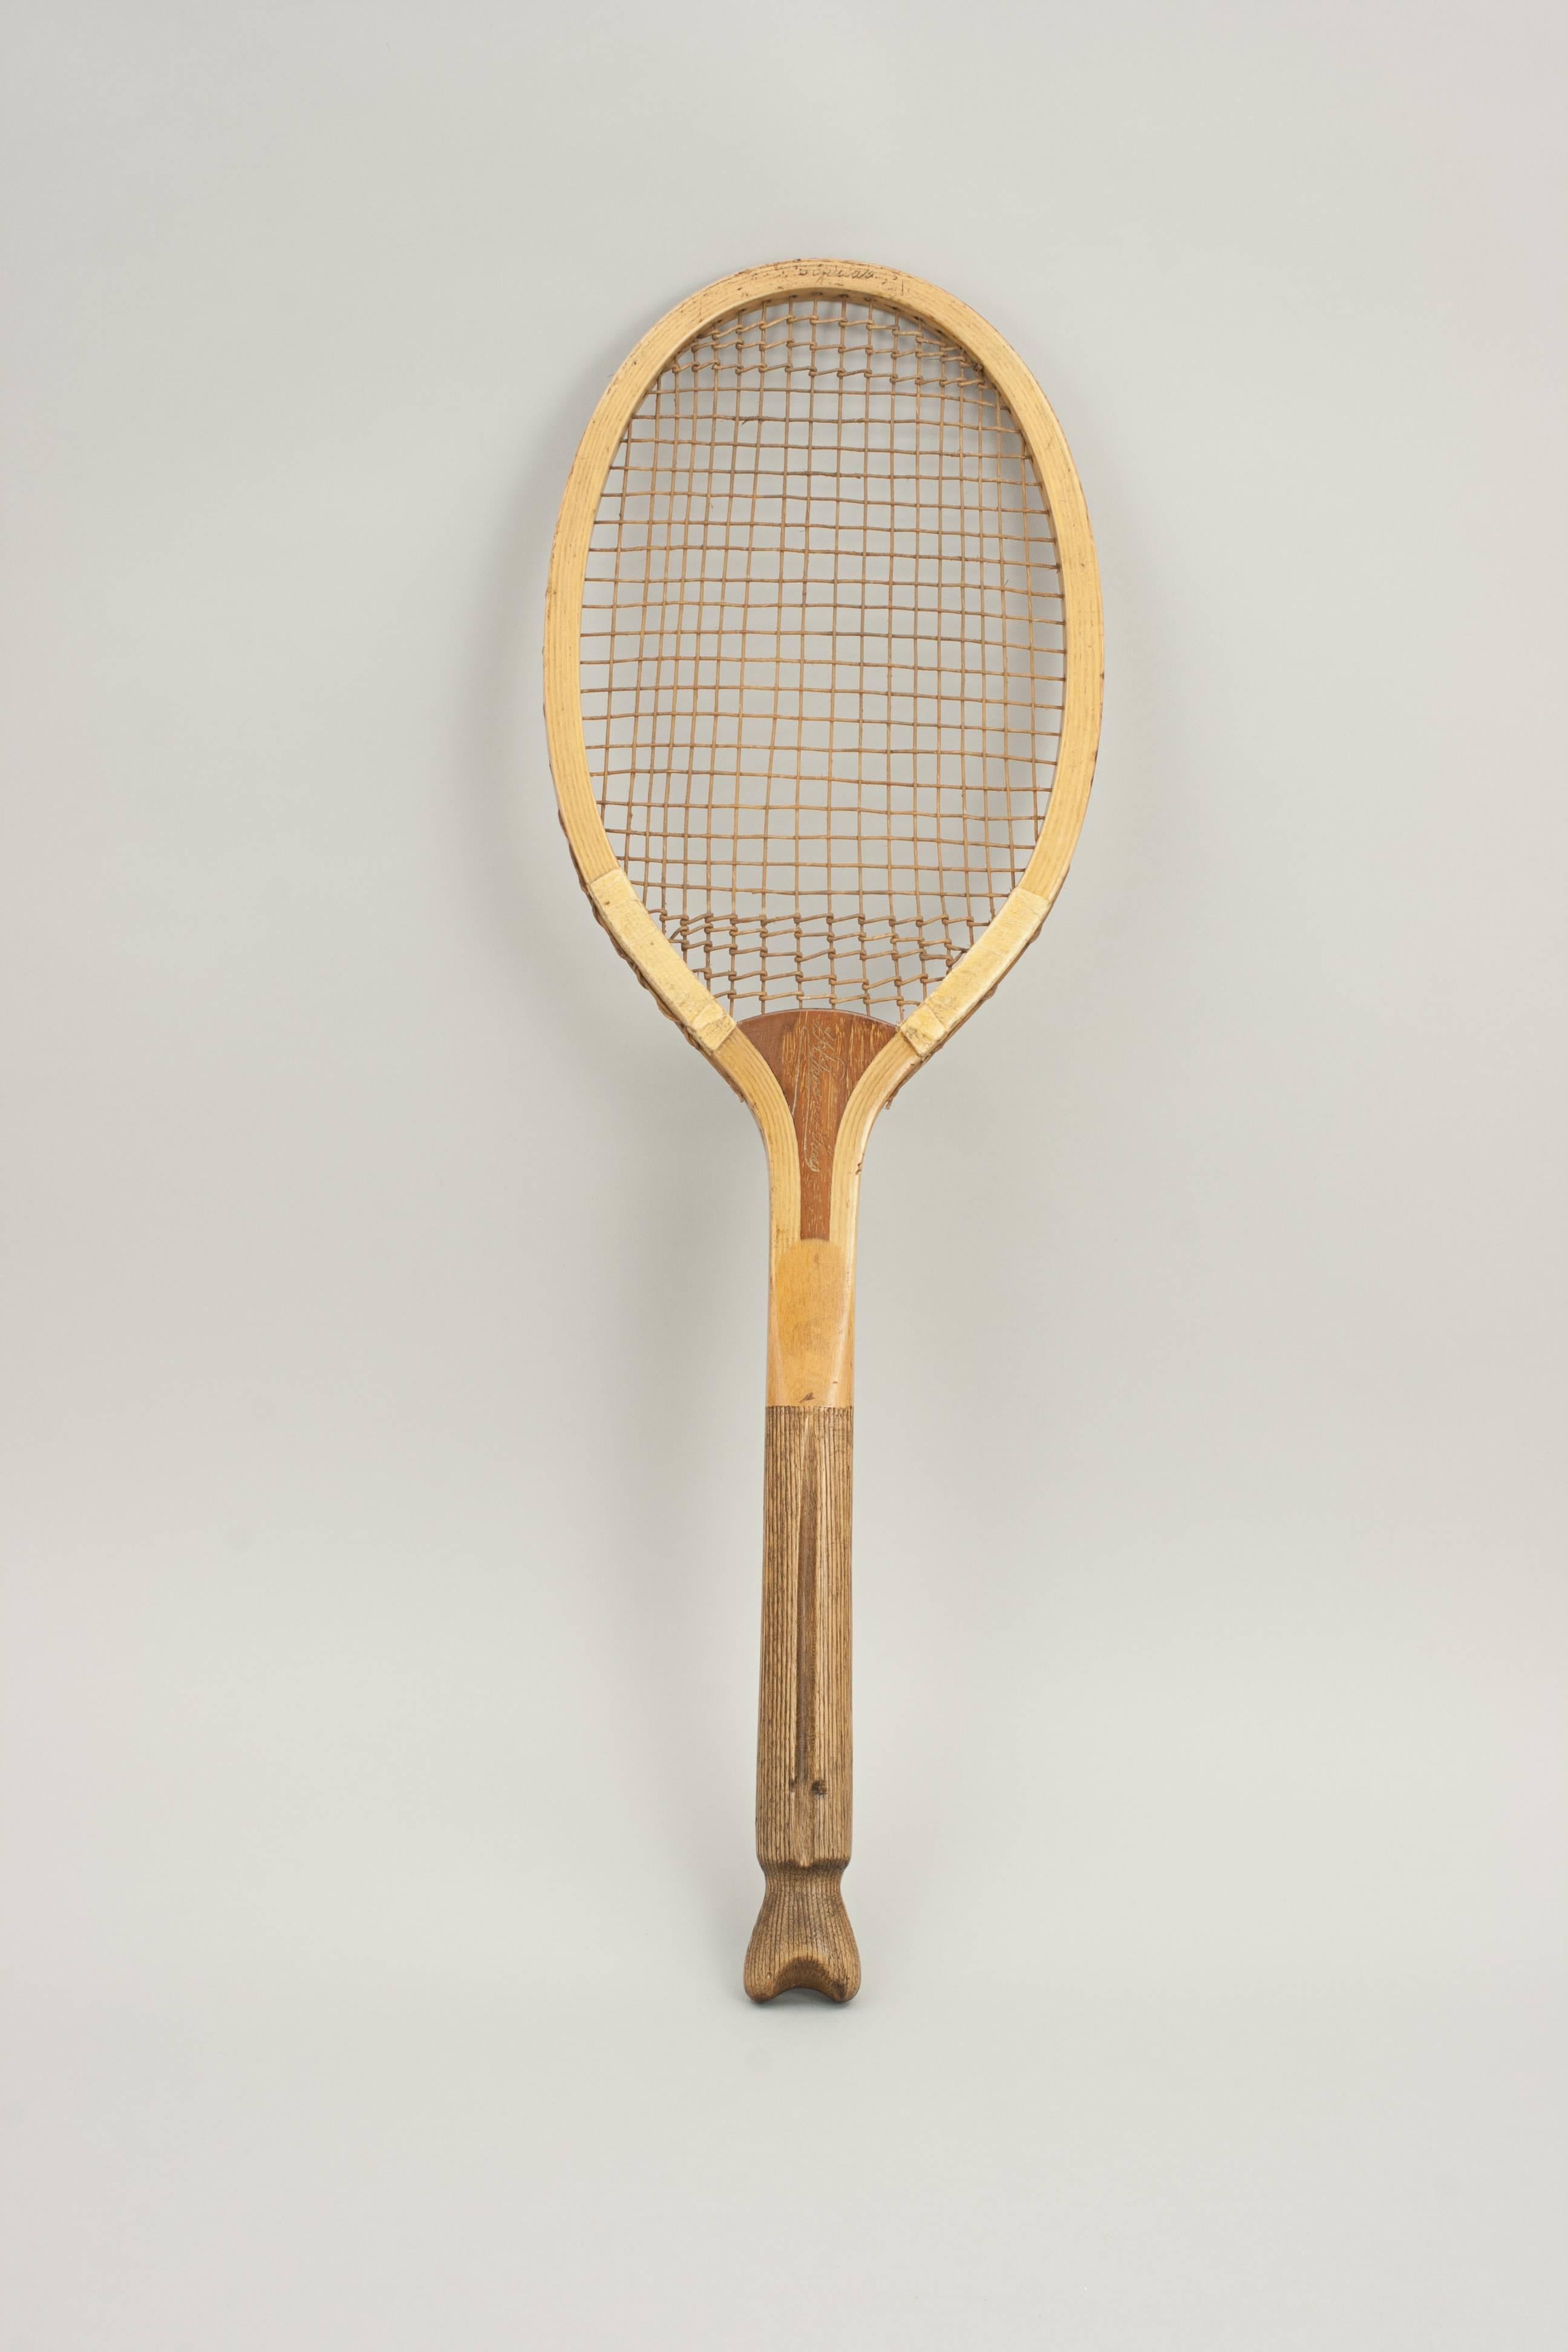 Prosser Fishtail Tennis Racket 3